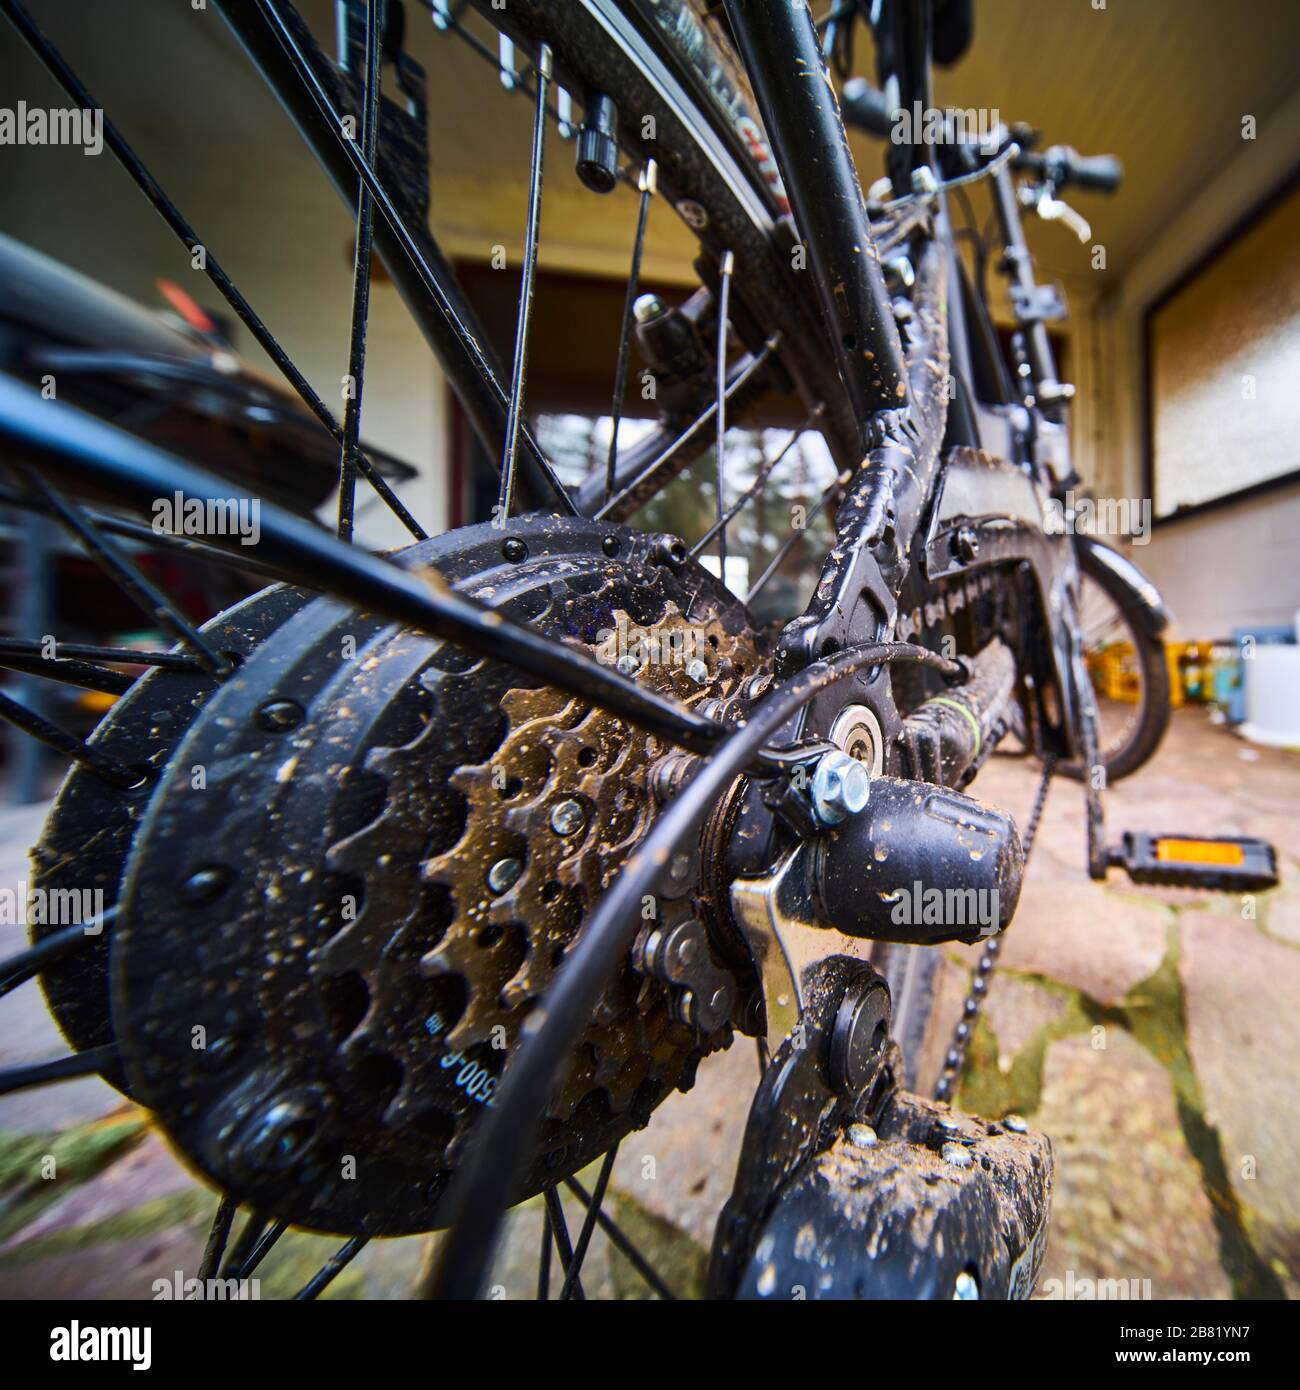 Pignoni e ingranaggi sul pneumatico posteriore di una bicicletta, primo piano con grandangolo, messa a fuoco selettiva Foto Stock